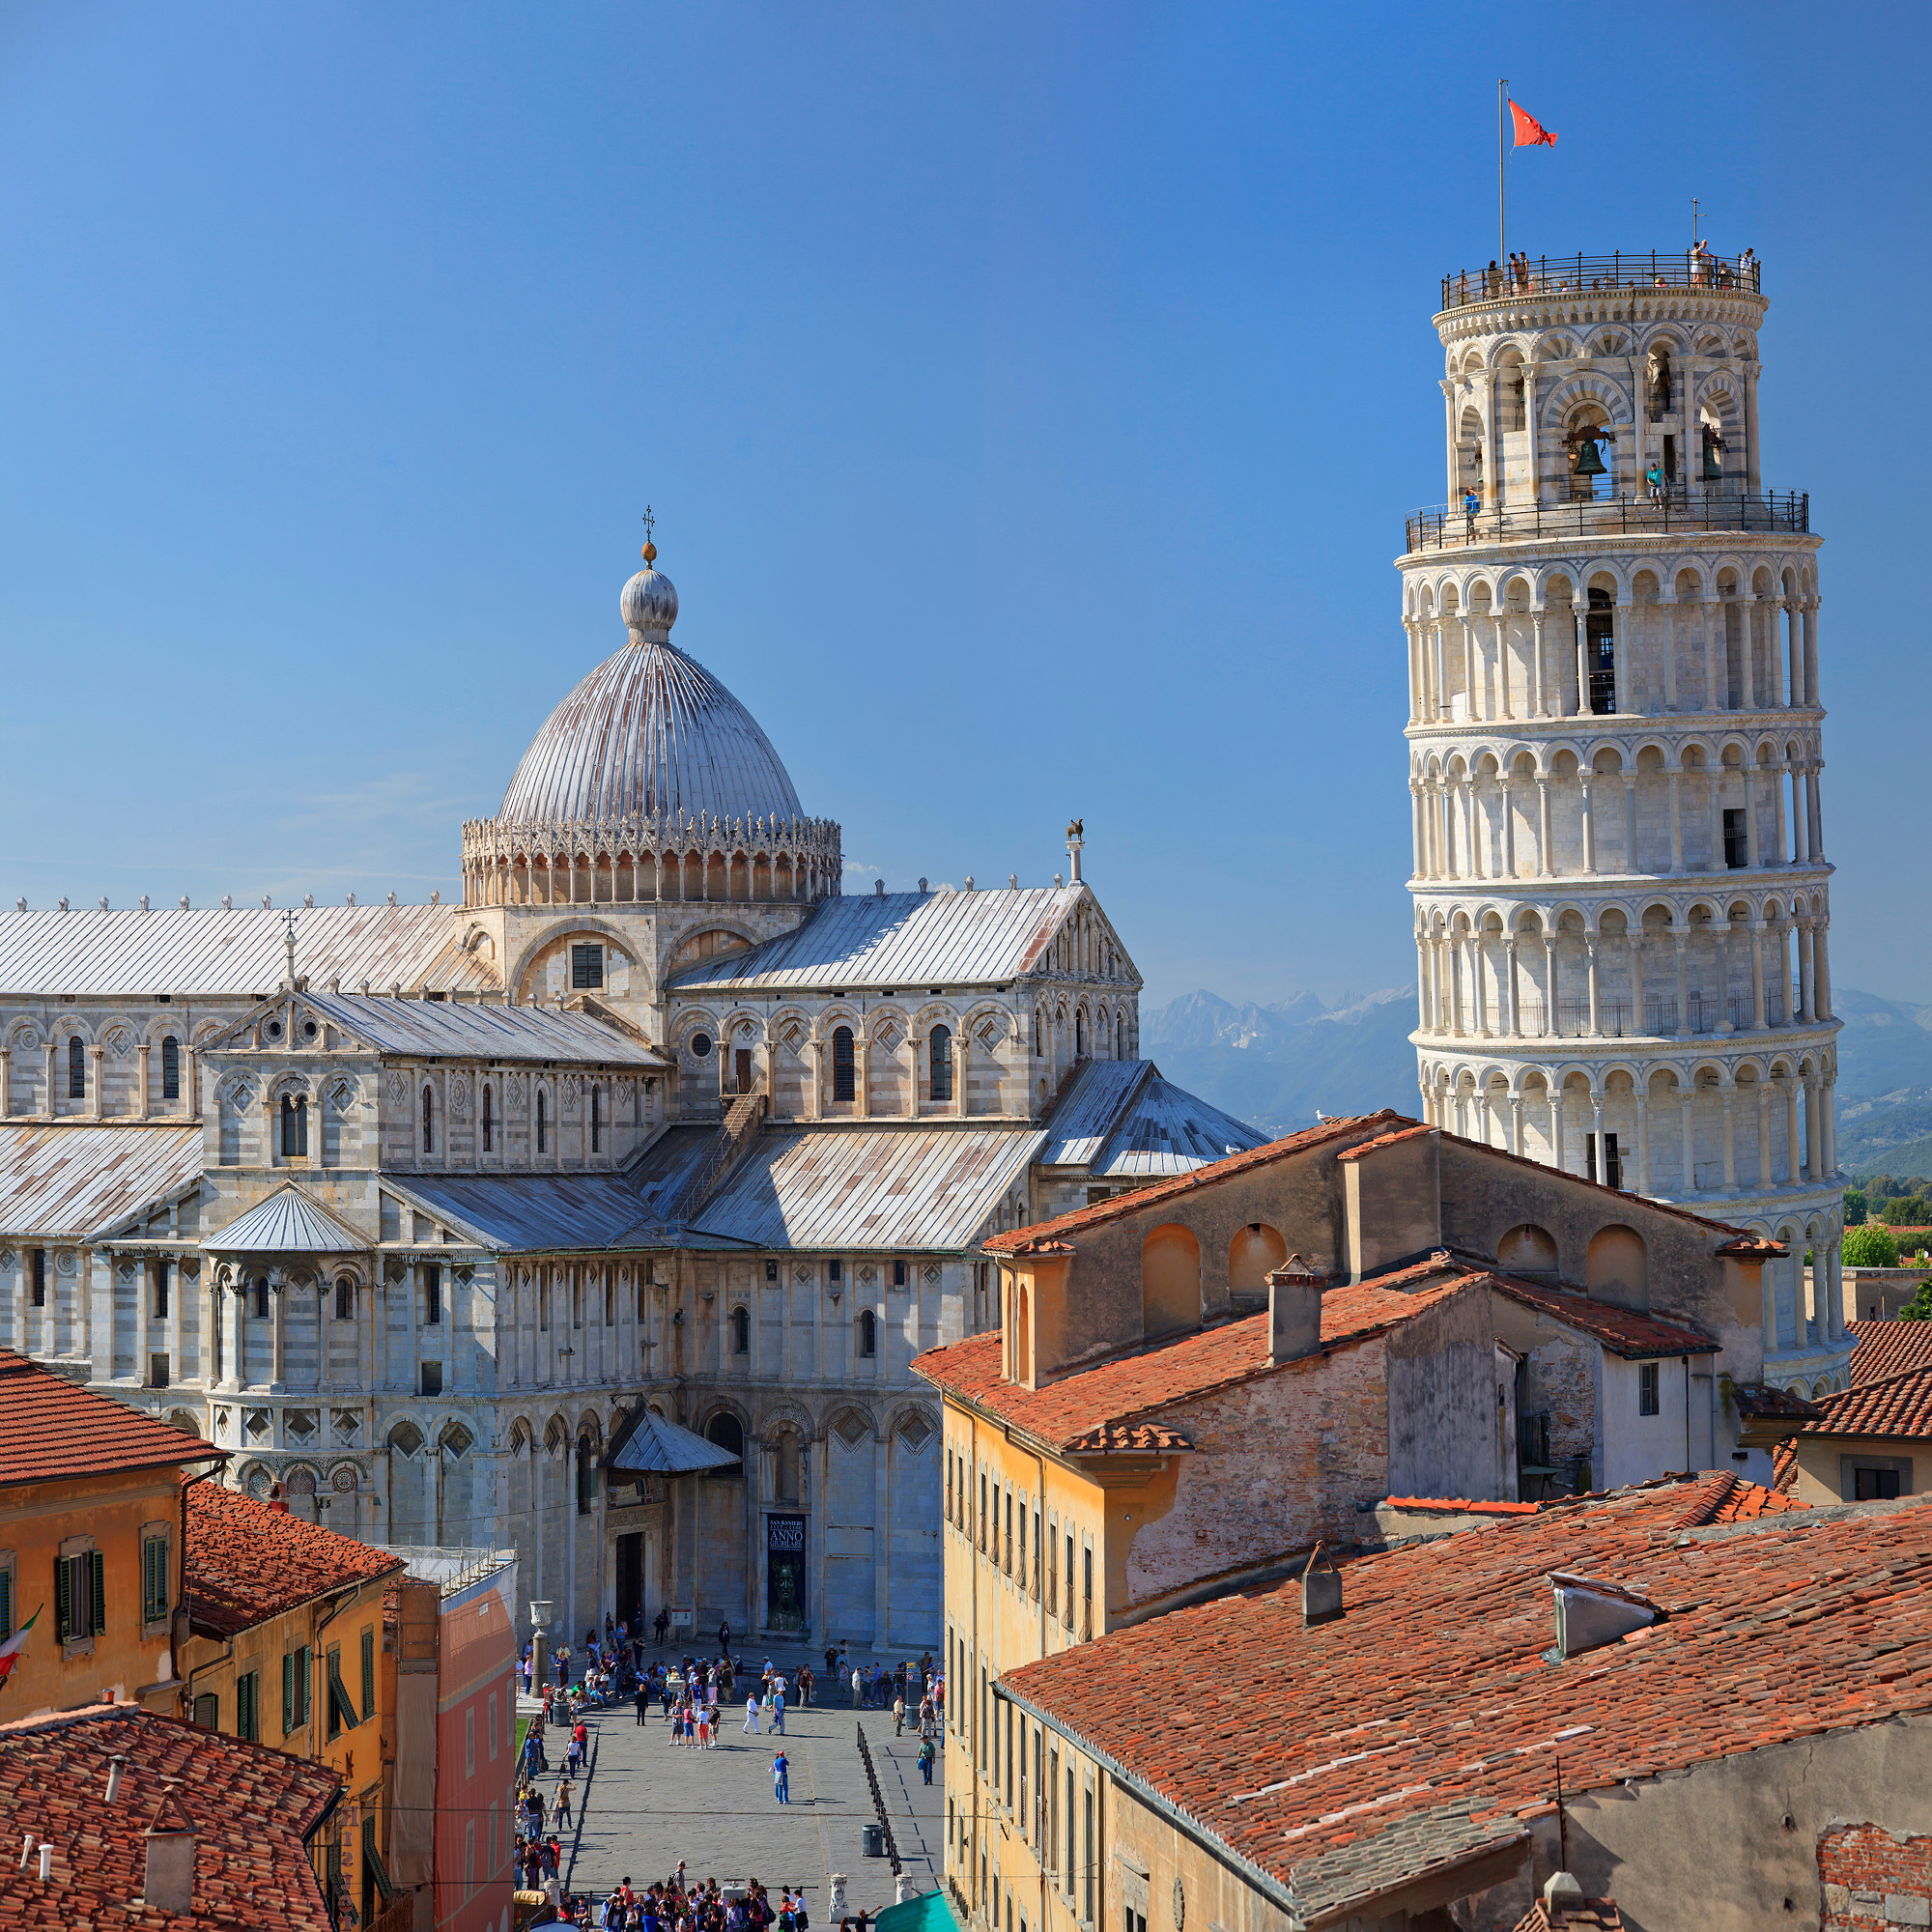 Cimetière monumental - Place des Miracles - Pisa